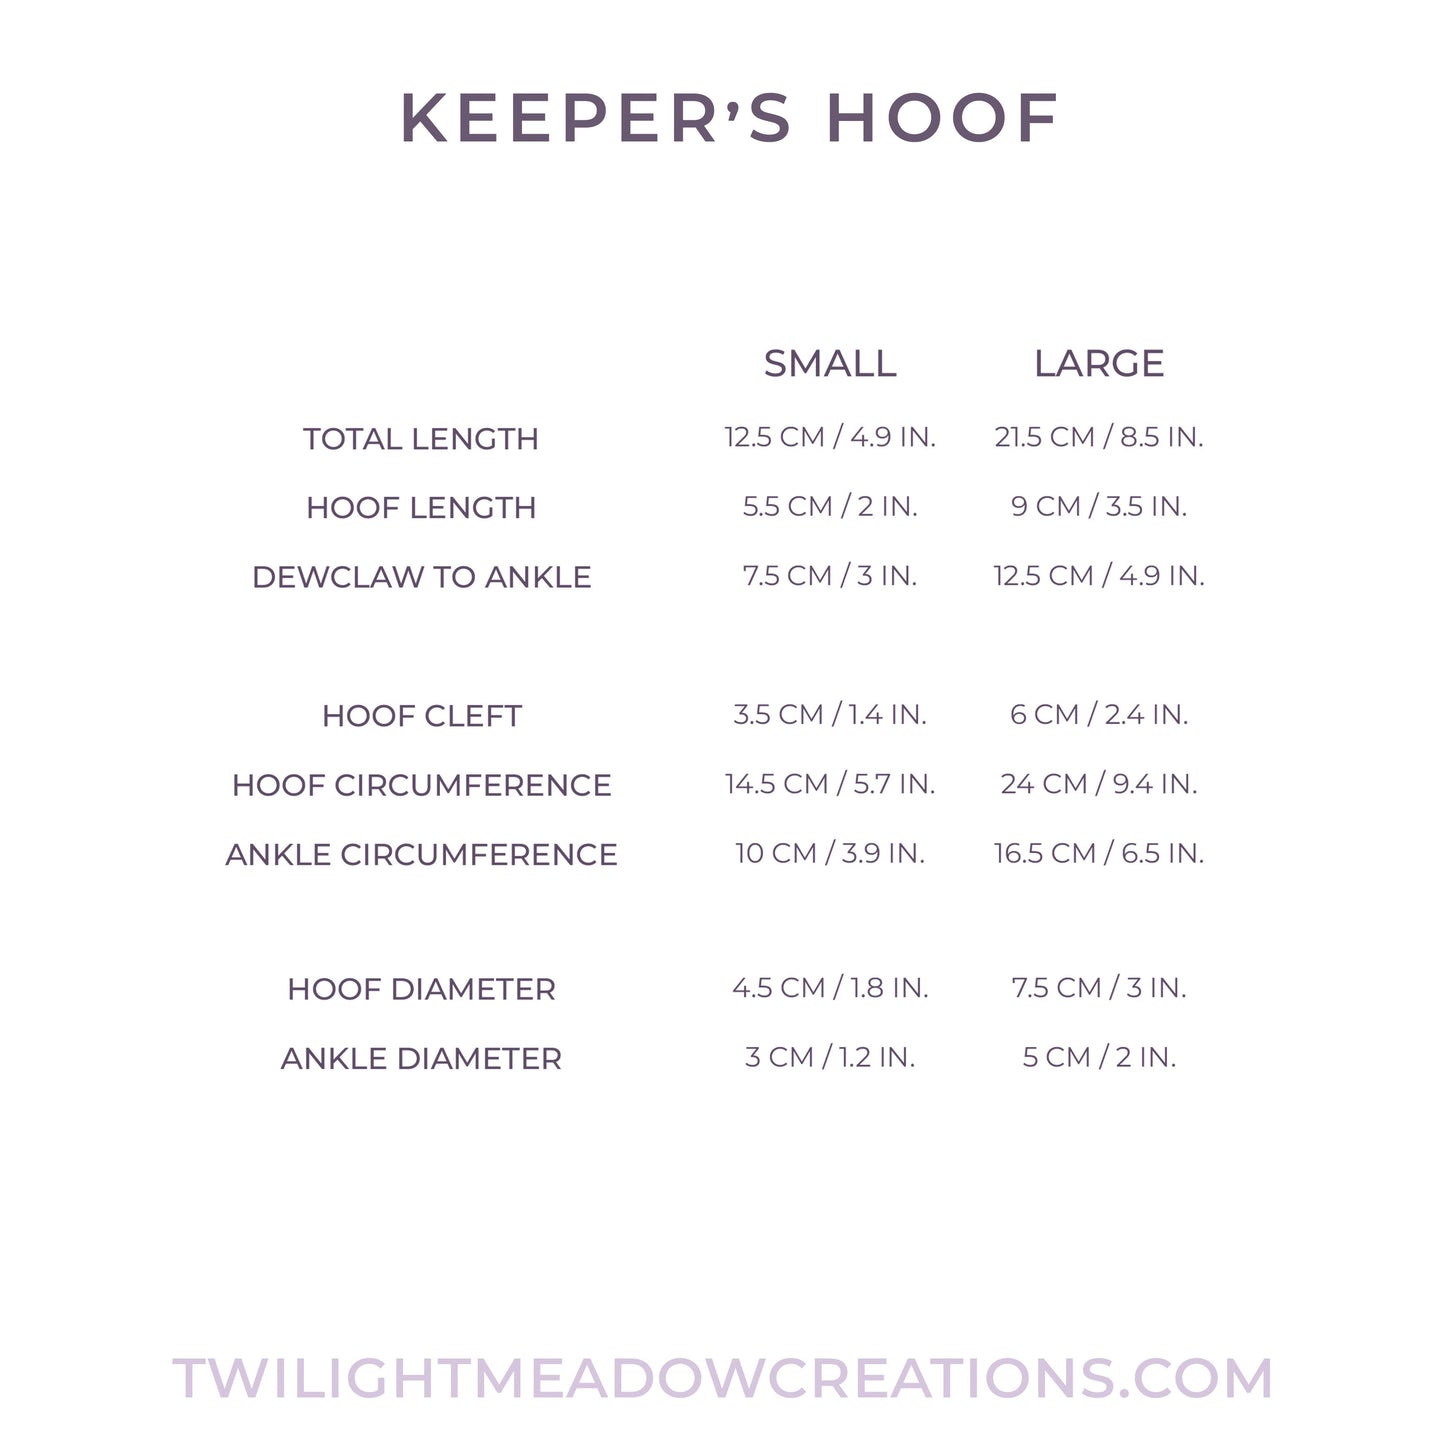 Small Keeper's Hoof FLOP (Firmness: Medium)